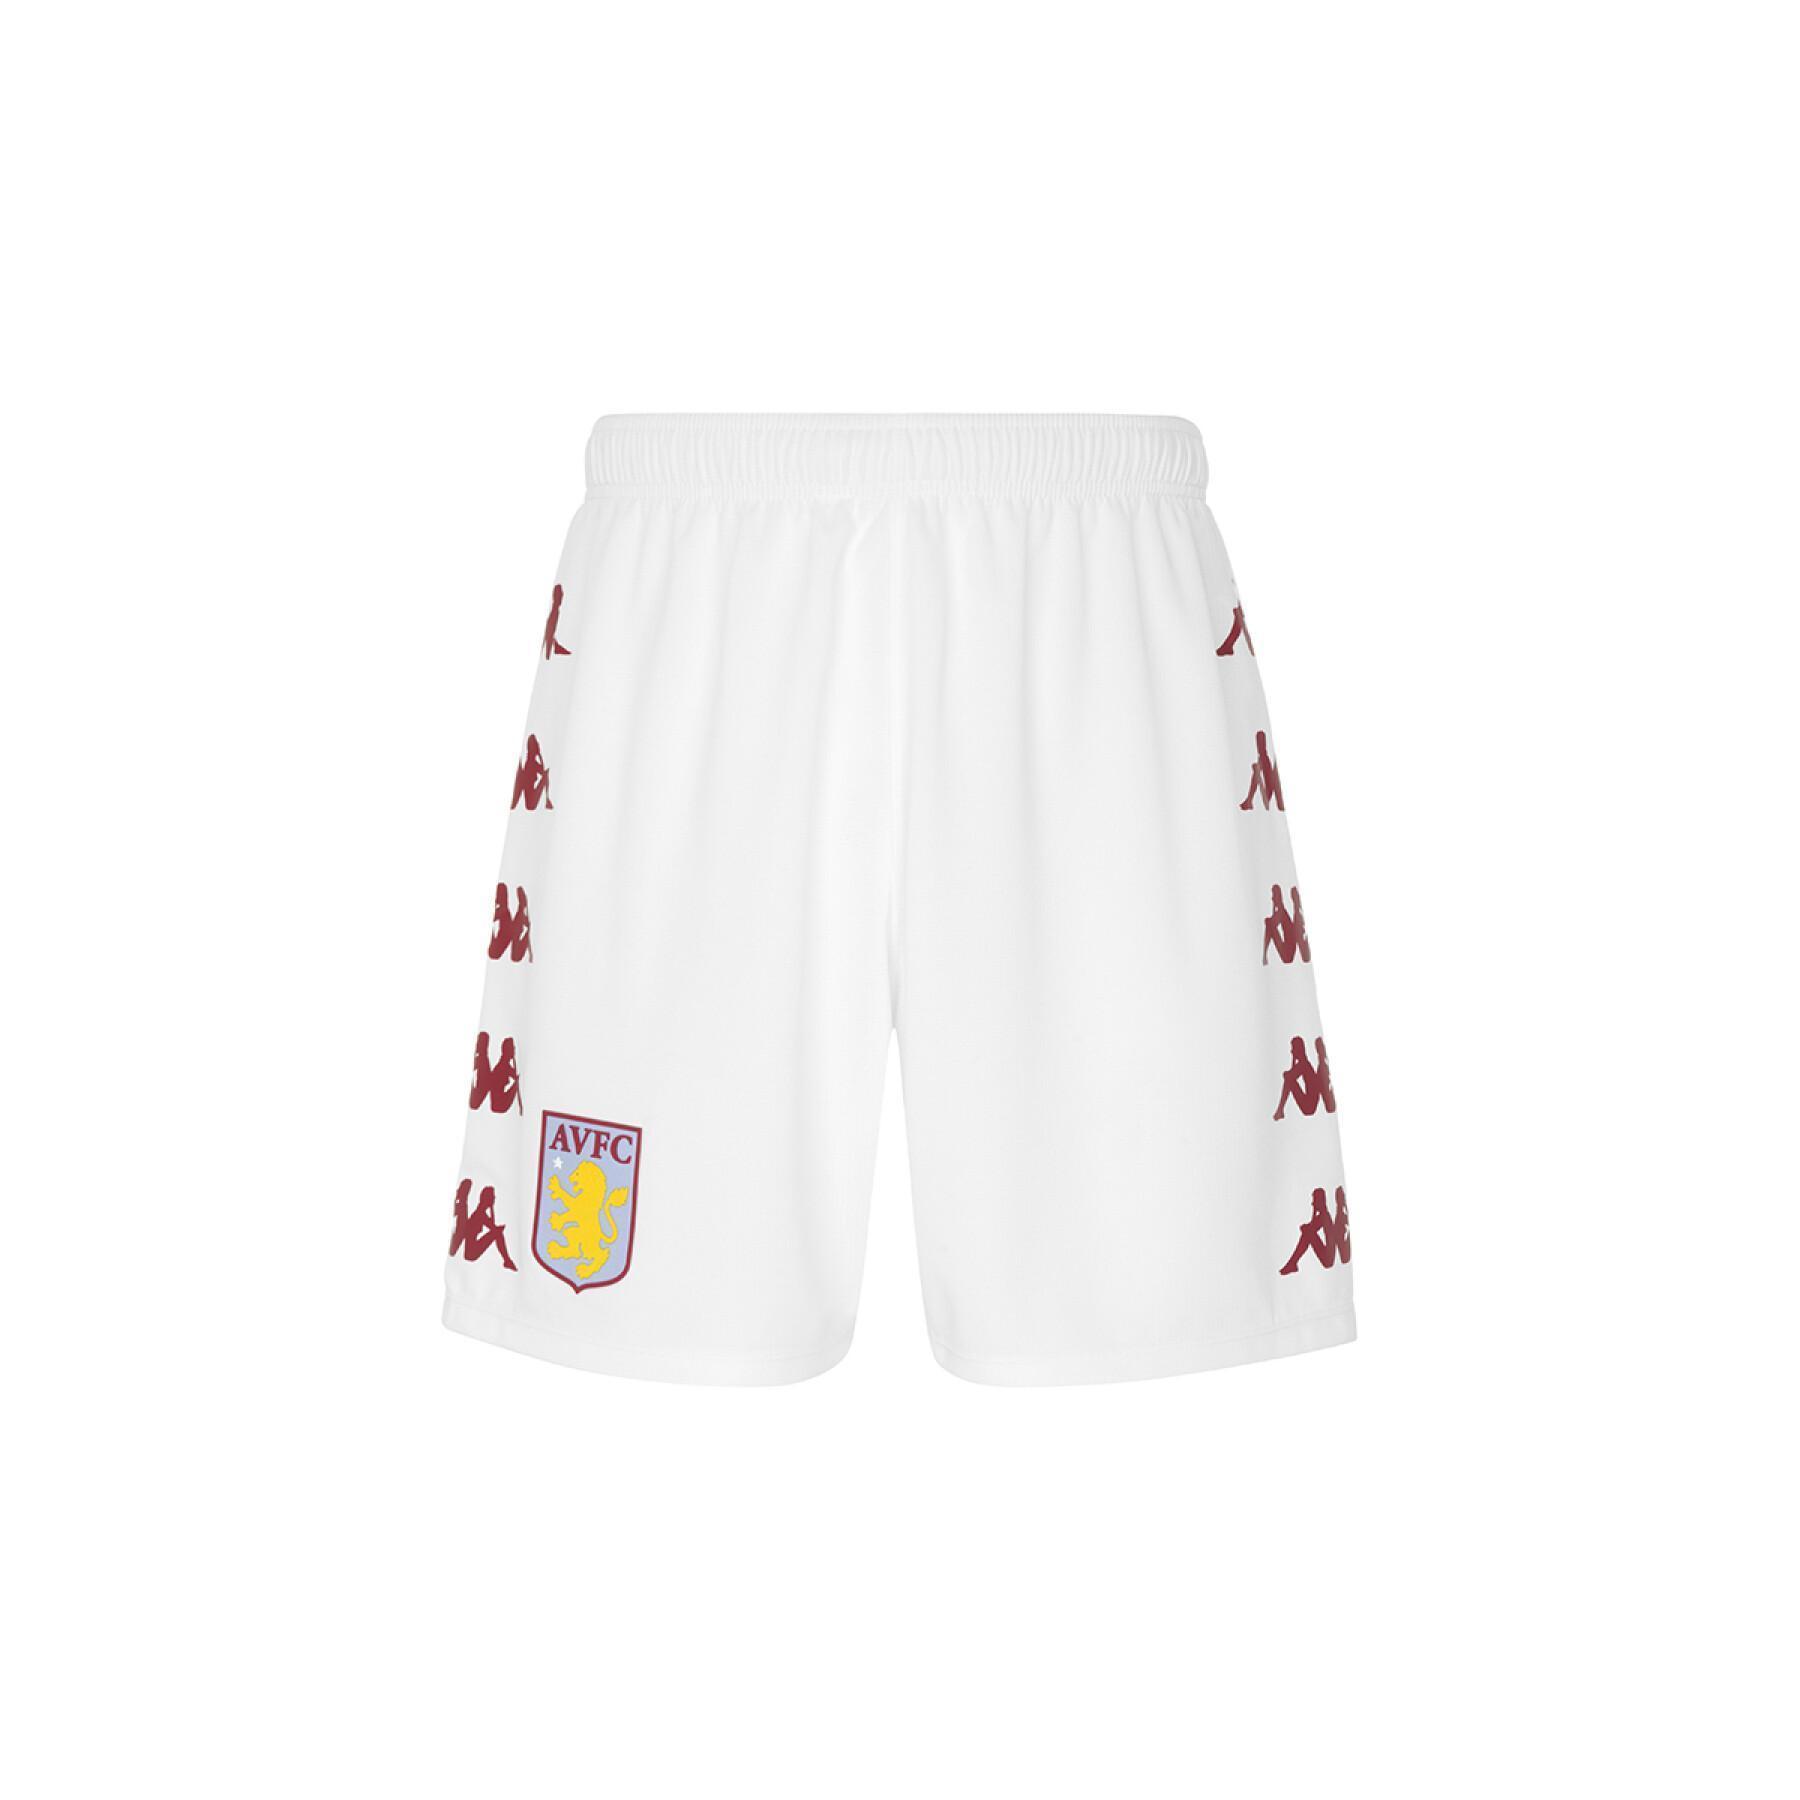 Pantalón corto home Aston Villa FC 2021/22